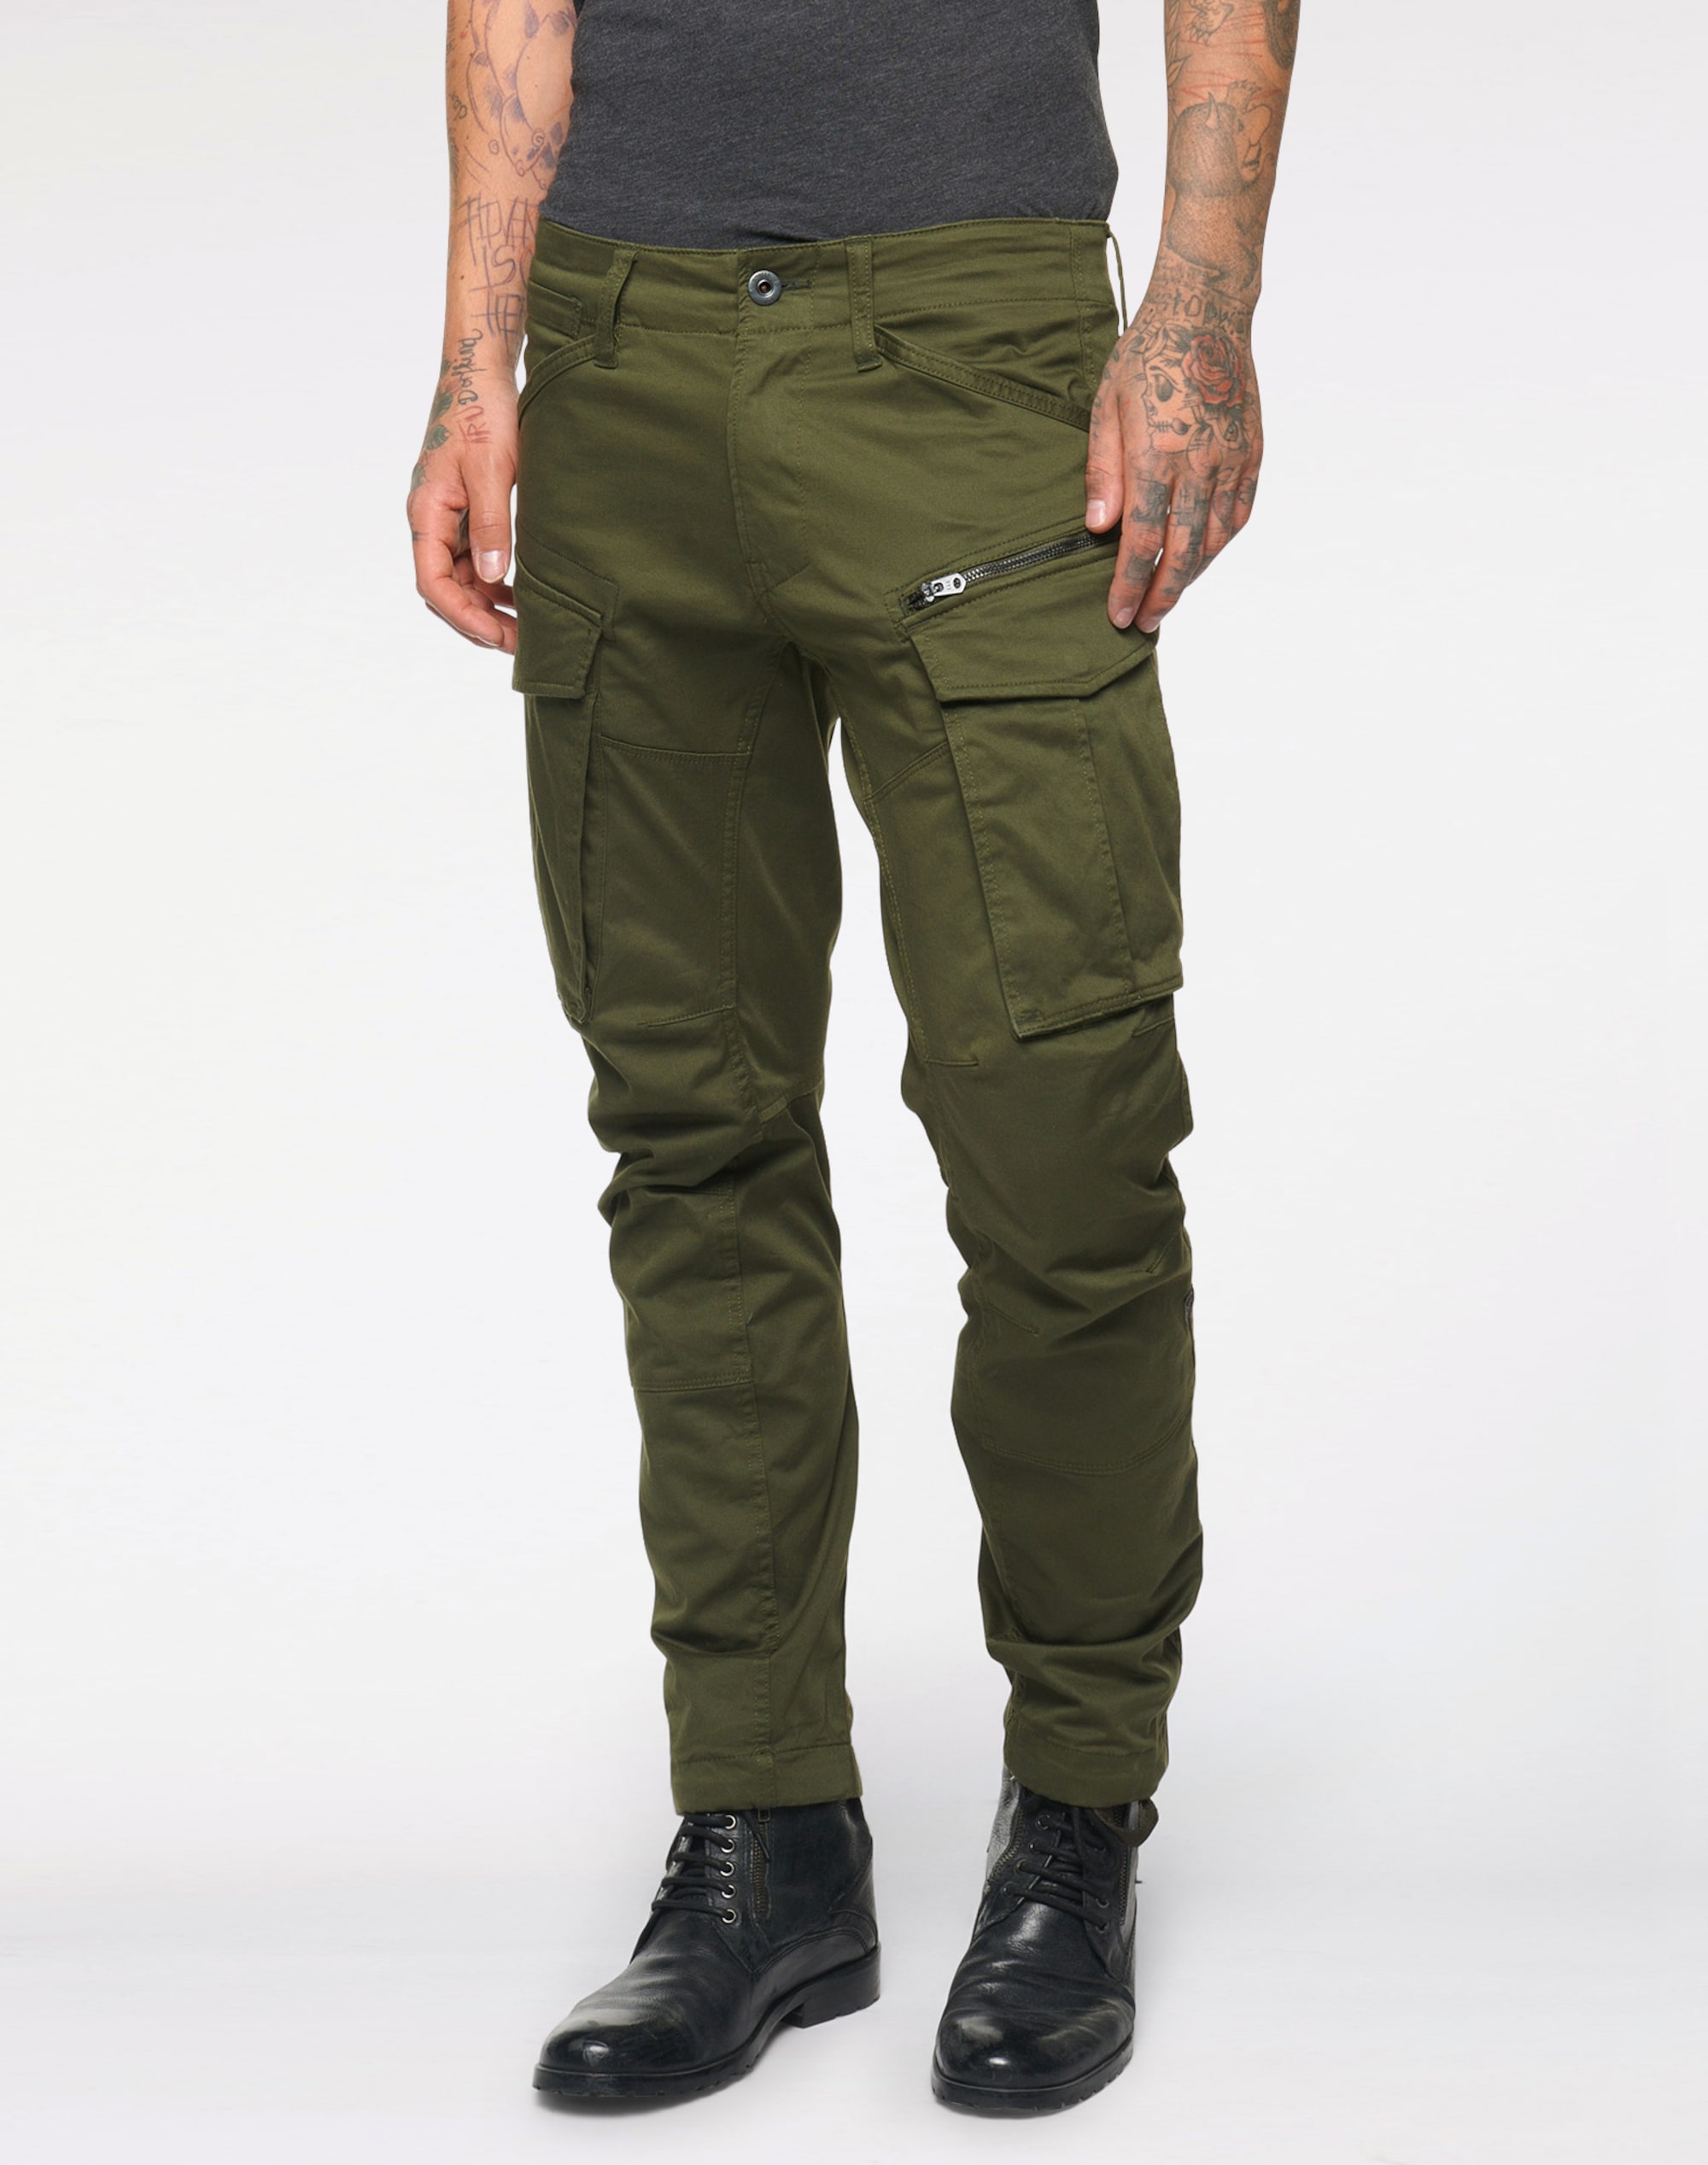 zelene-kapsace-panske-kalhoty